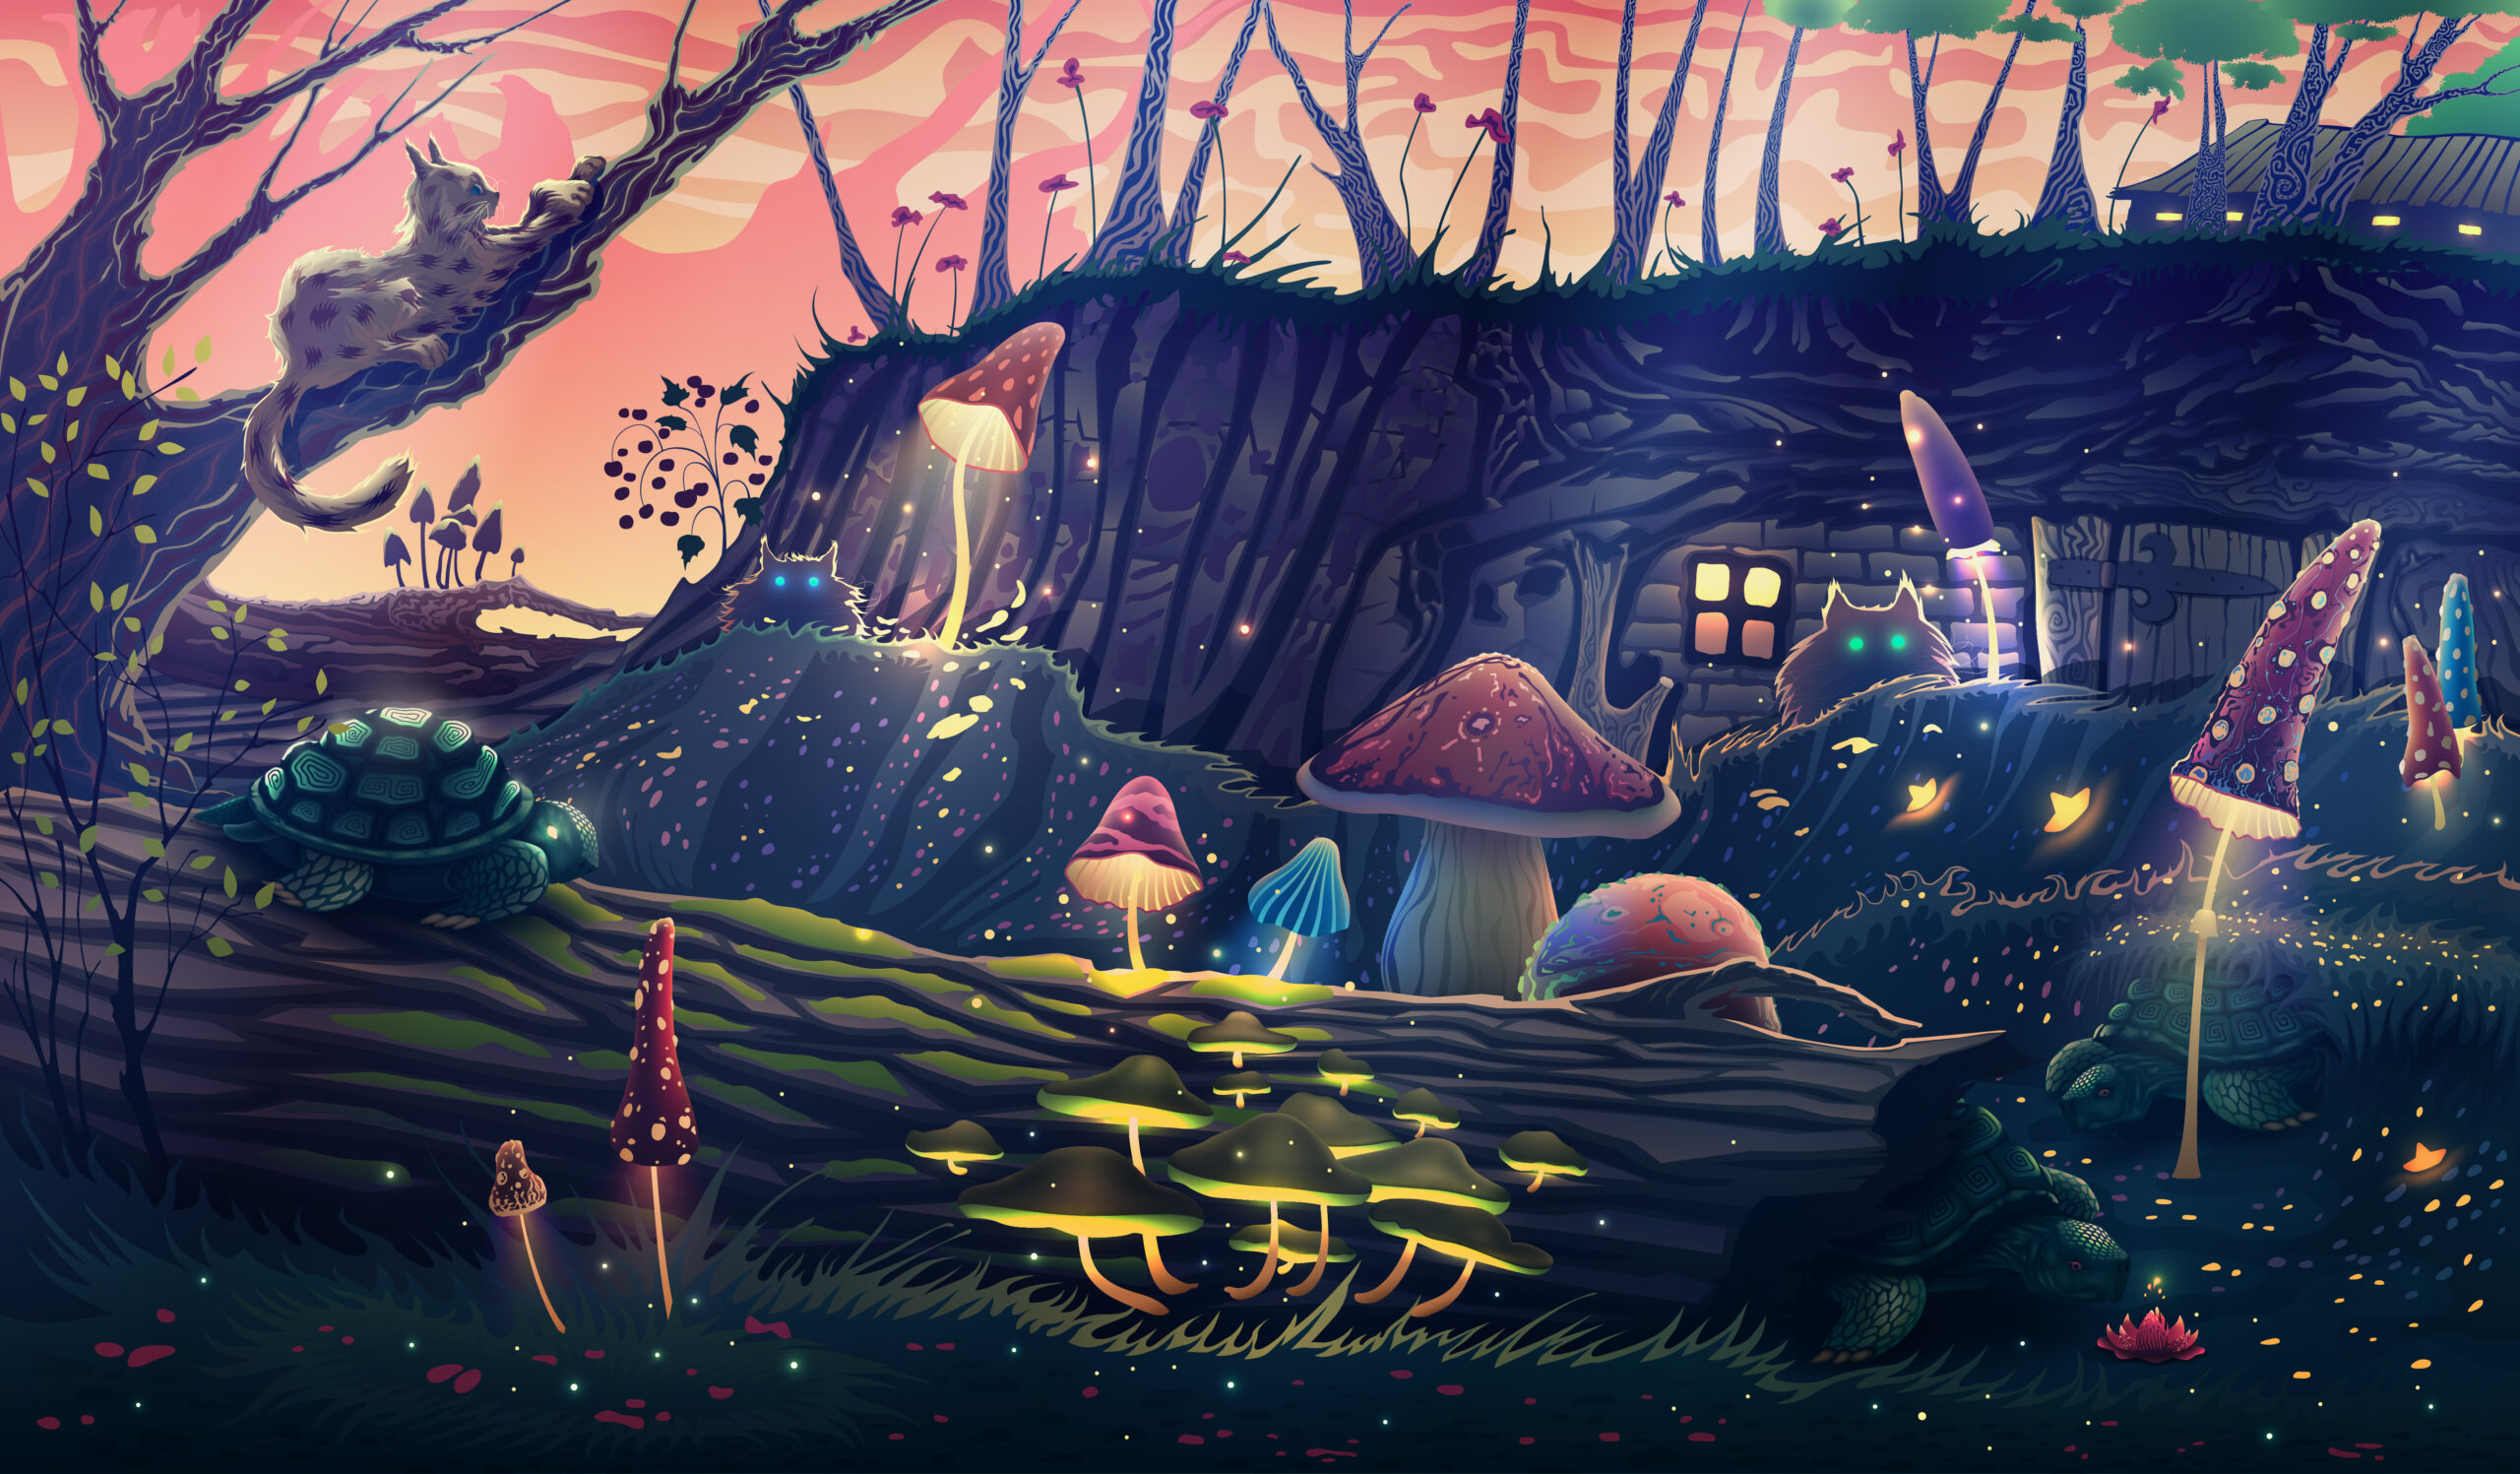 Ilustracja zaczarowanego lasu w jaskarawych fluorescencyjnych kolorach przedstawiono maly domek oraz porastajace go grzyby.